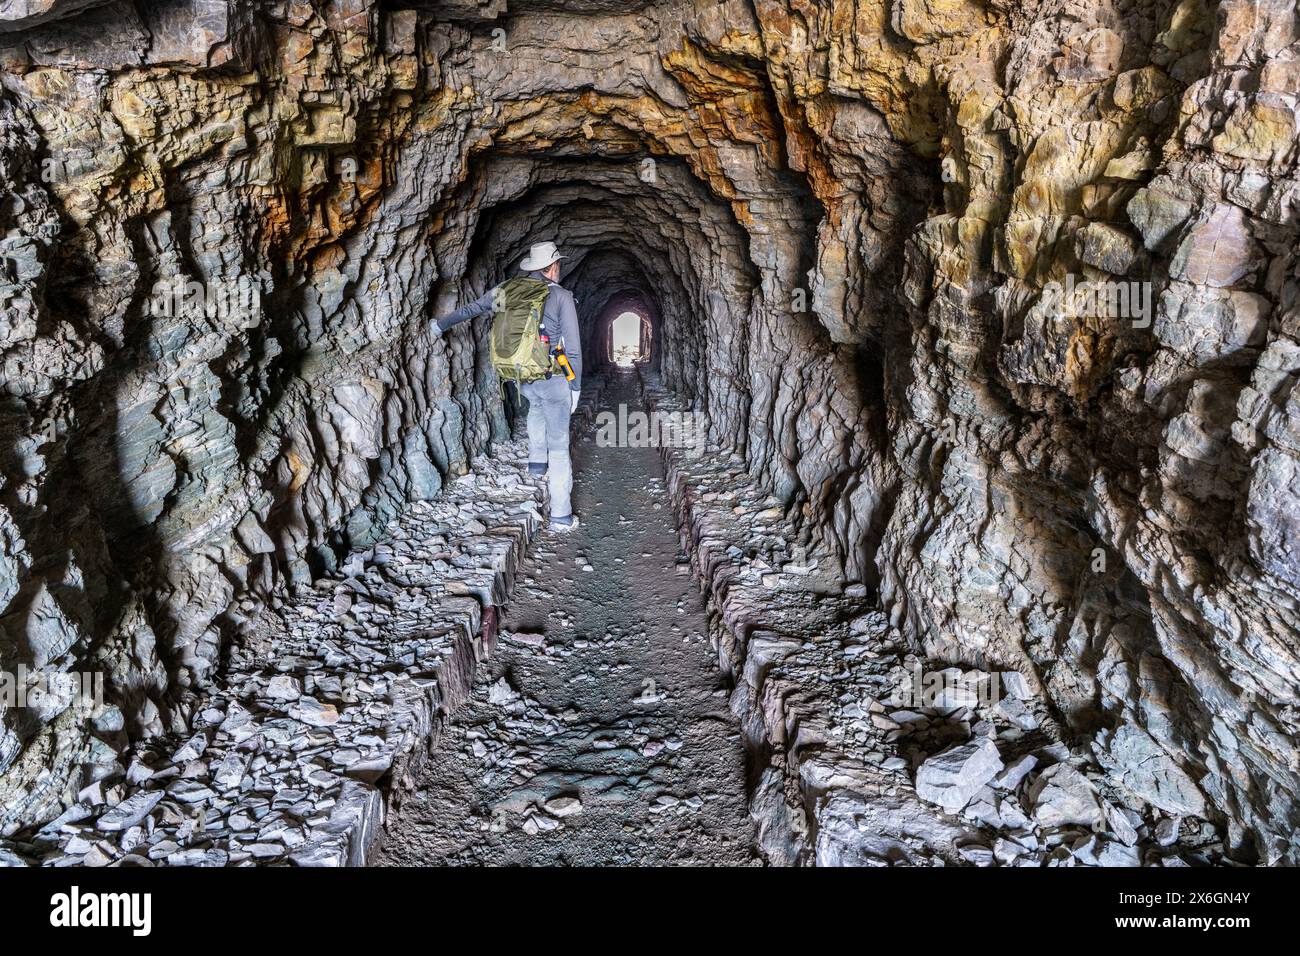 Reife Caucasian man Wanderer steht in einem Fußgängertunnel, der durch Red Argillith und Quarzitgestein gesprengt wurde, Ptarmigan Tunnel, Glacier National Park, Stockfoto